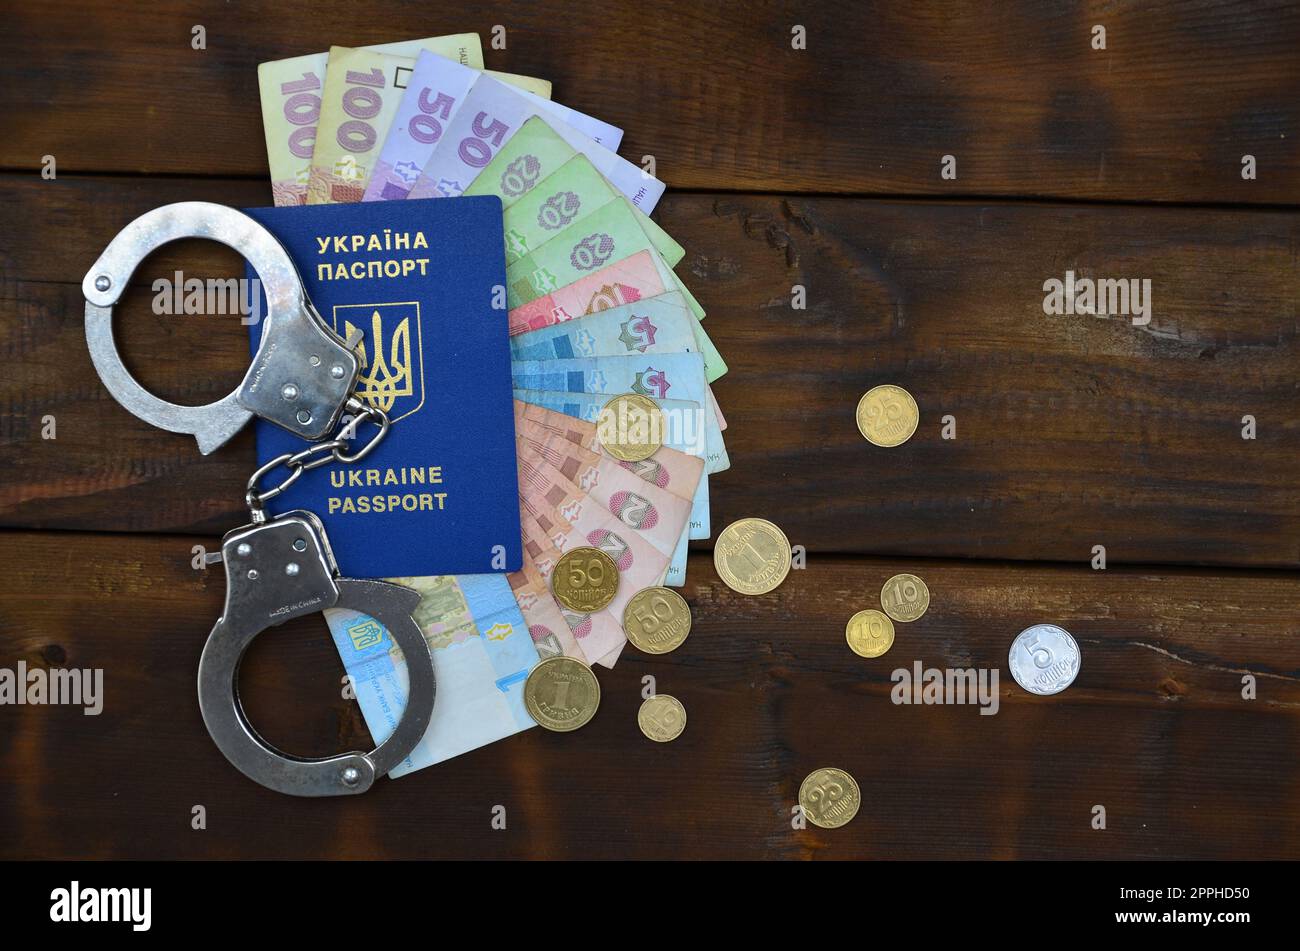 Una fotografia di un passaporto straniero ucraino, una certa quantità di denaro ucraino e manette di polizia. Il concetto di arrestare gli immigrati illegali ucraini mentre cercano di corrompere Foto Stock